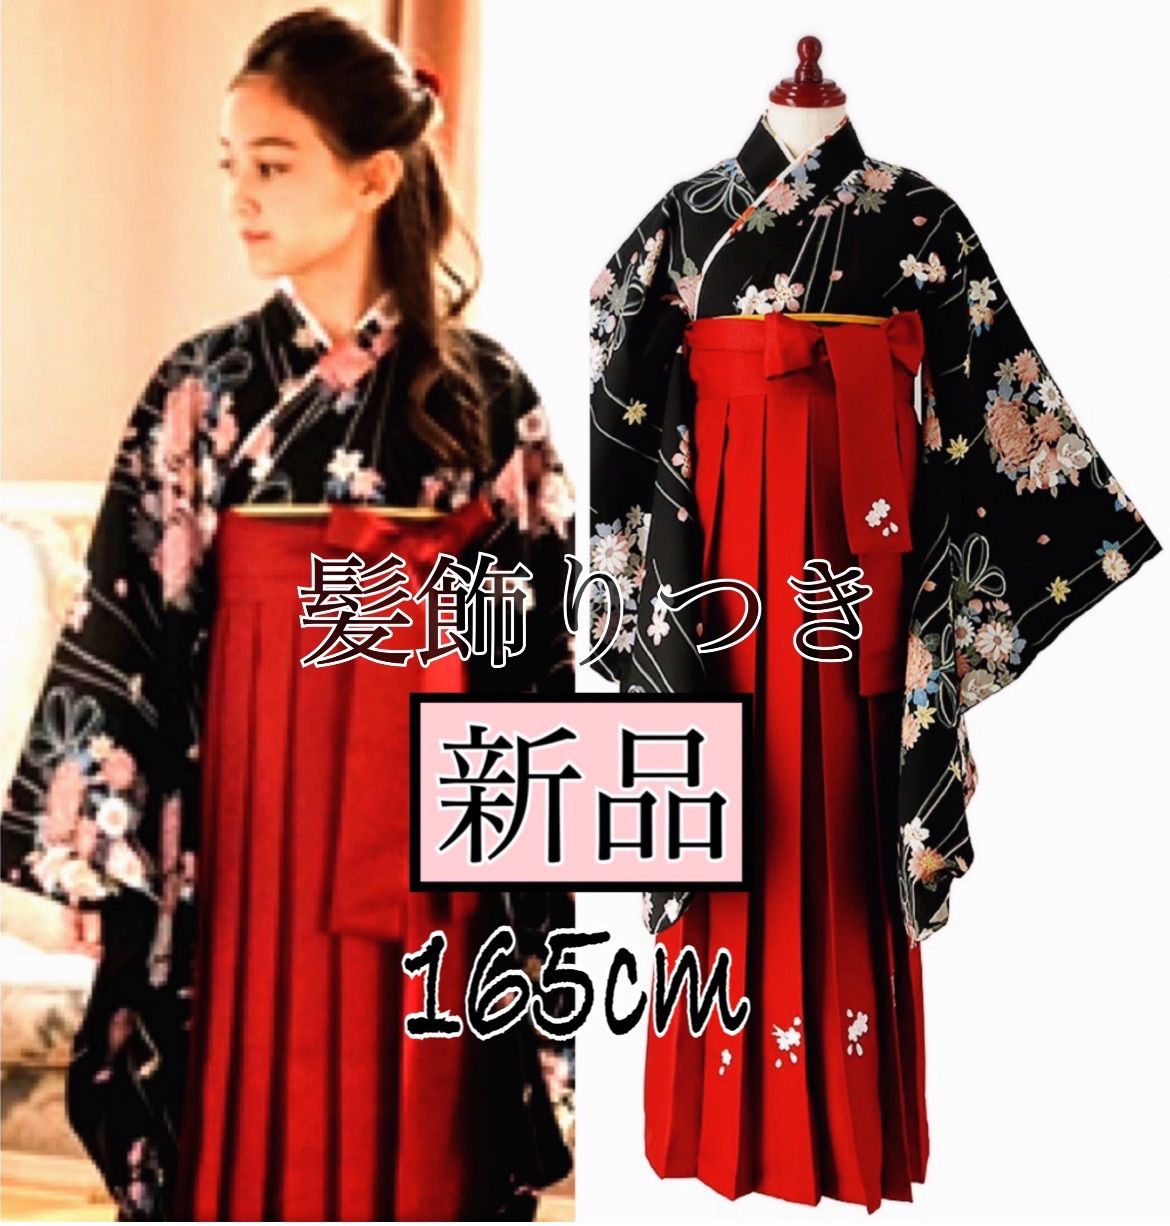 キャサリンコテージ 165 赤椿 花柄 袴セット 卒業式 成人式 着物 髪飾りサイズ165cm